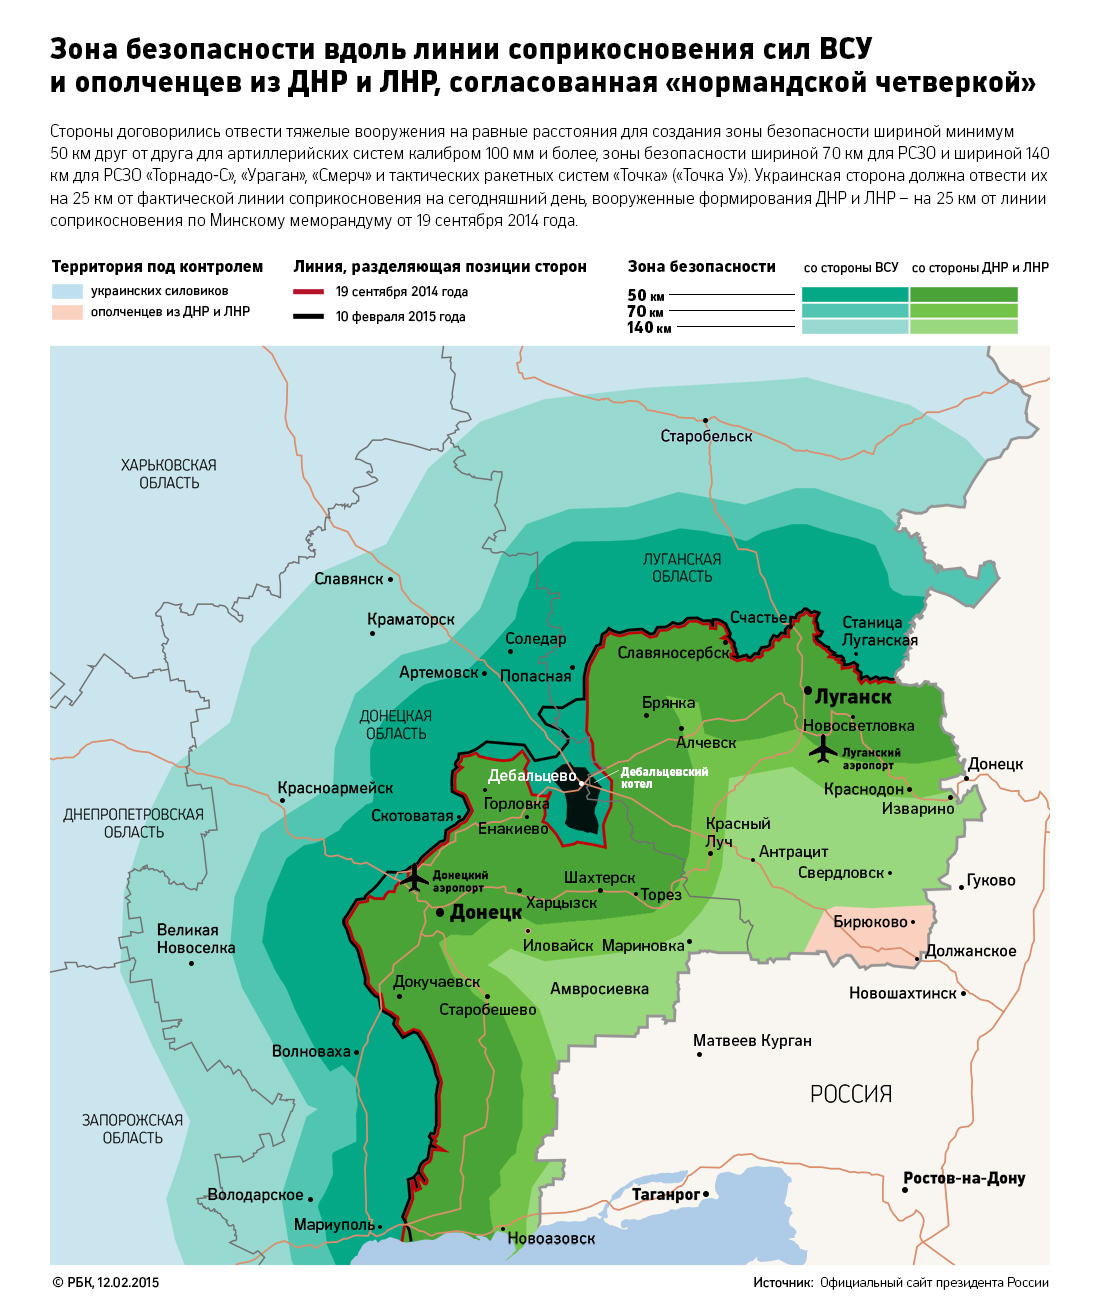 «Нормандская четверка» признала факт прекращения огня в Донбассе